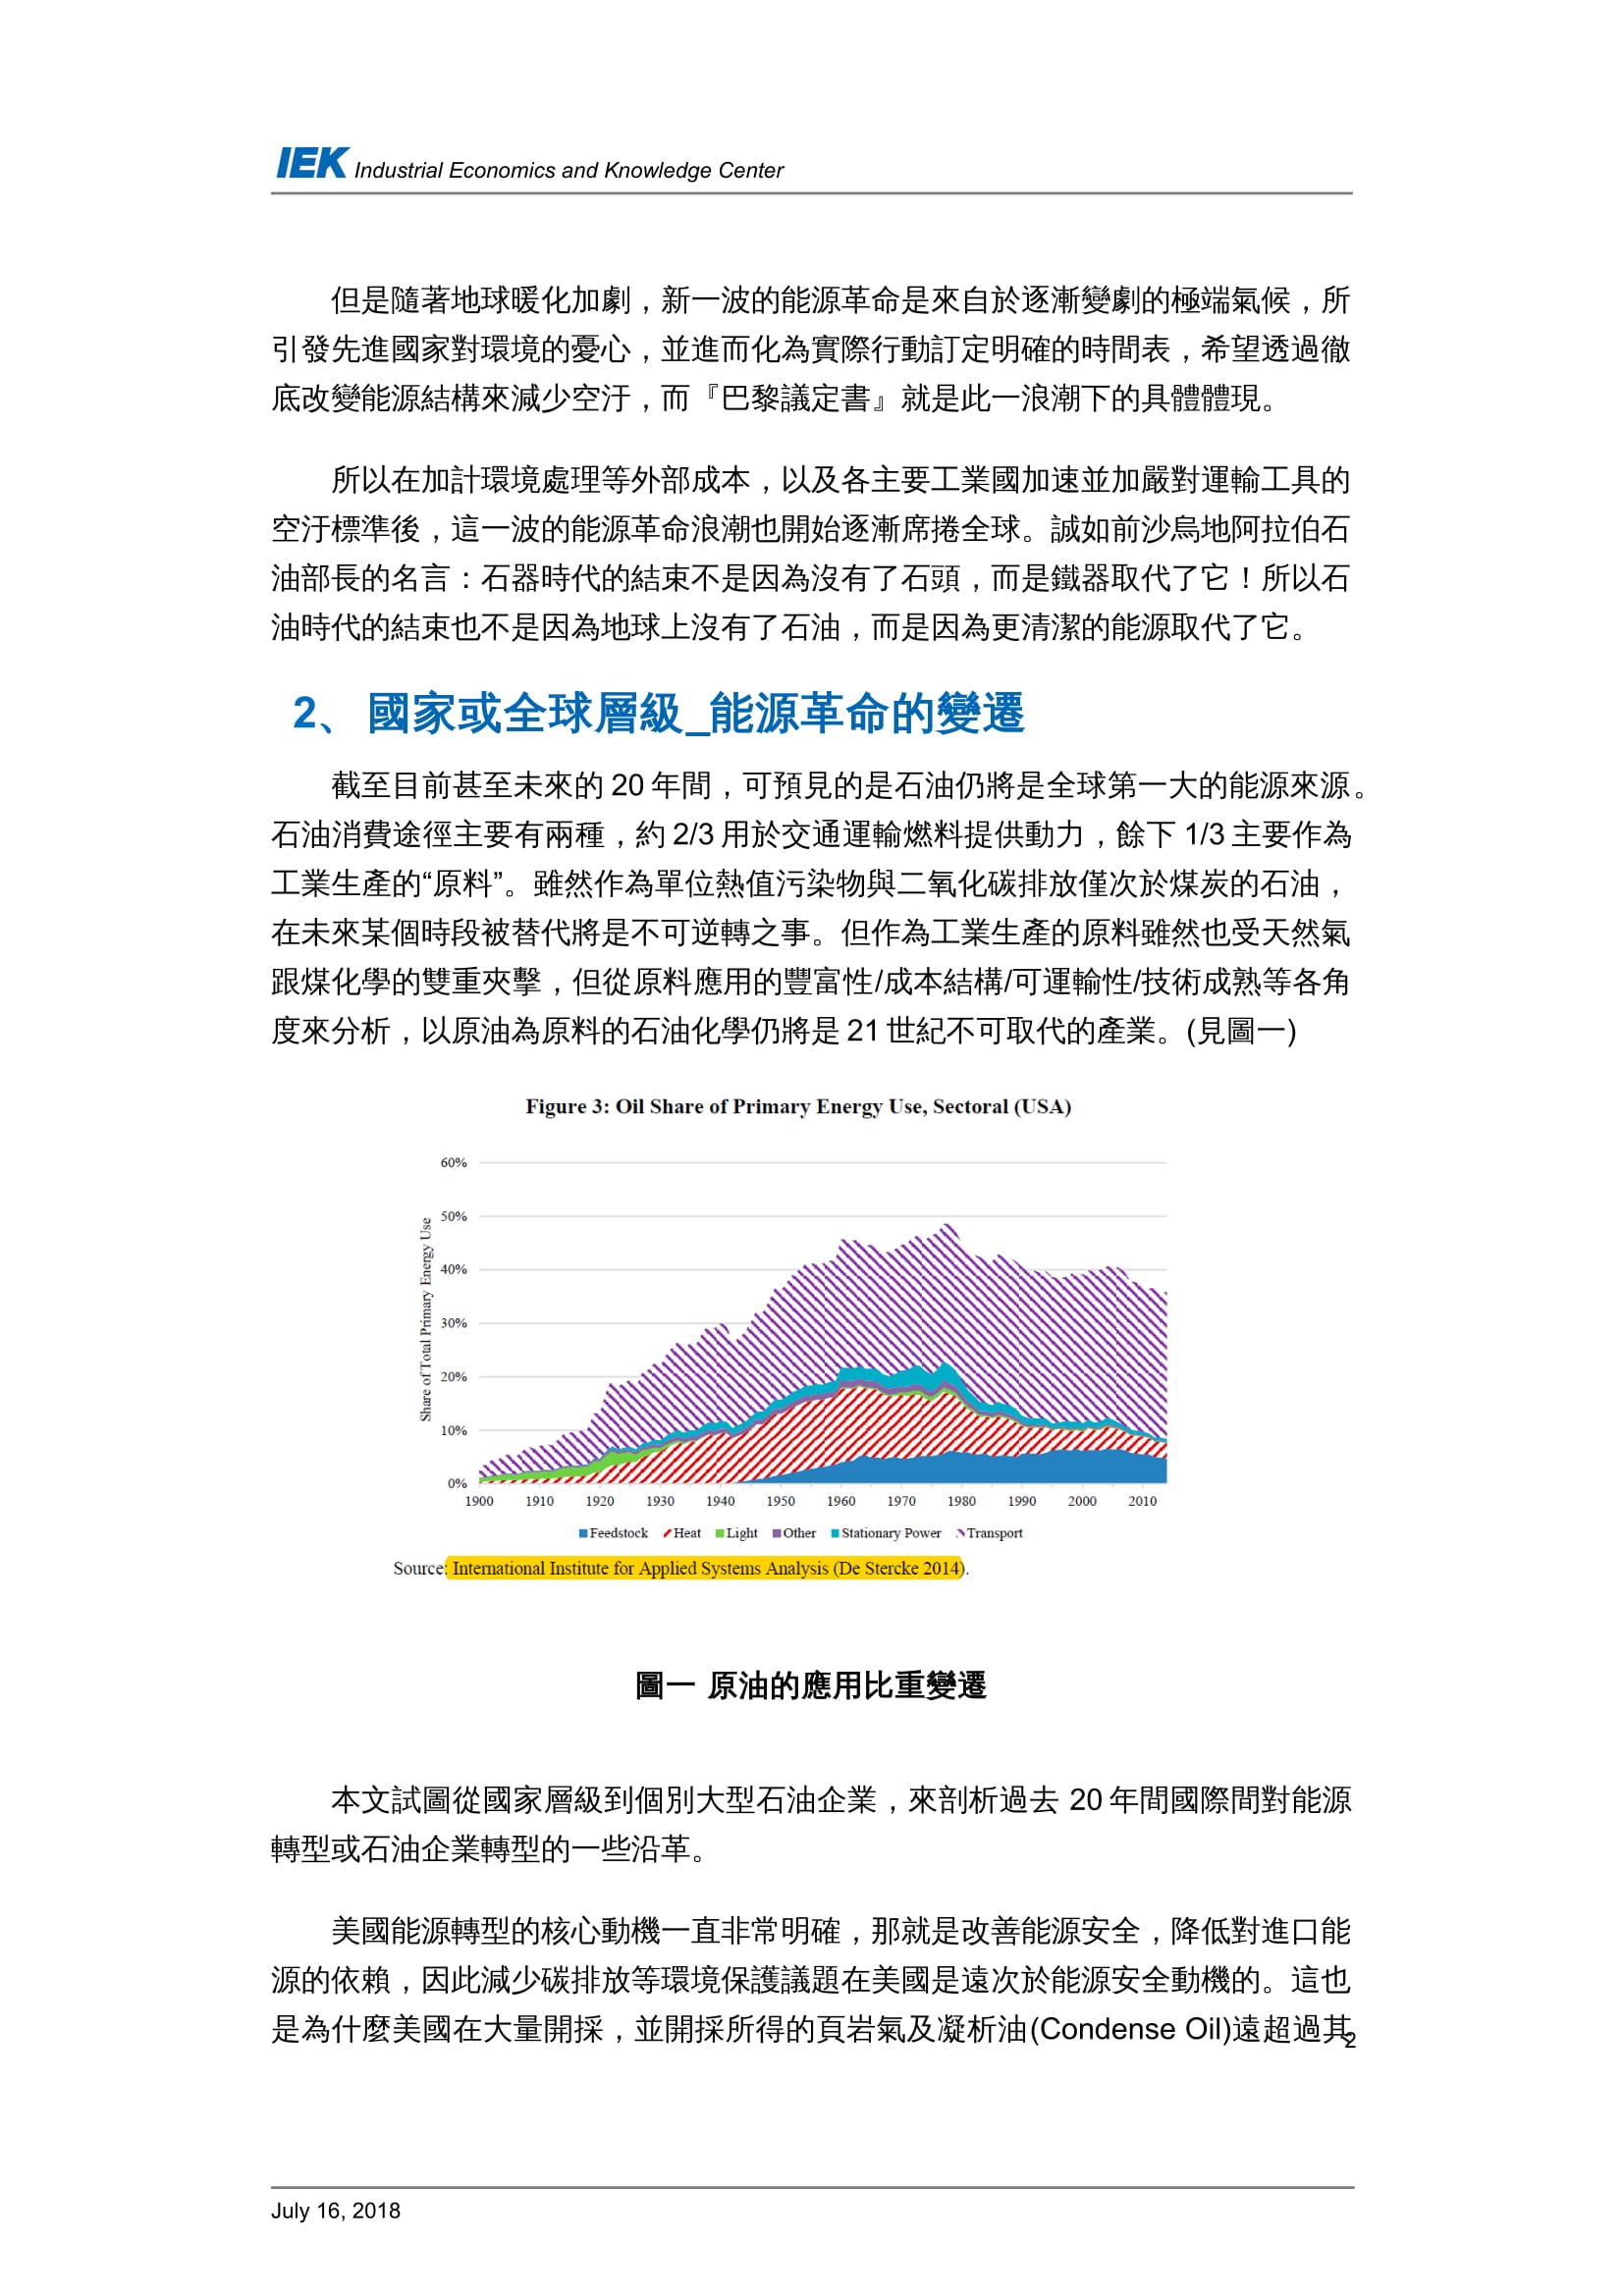 從國外石油產業的轉型看台灣中油的轉型策略_共11頁_第4頁內文(詳如下方附件)